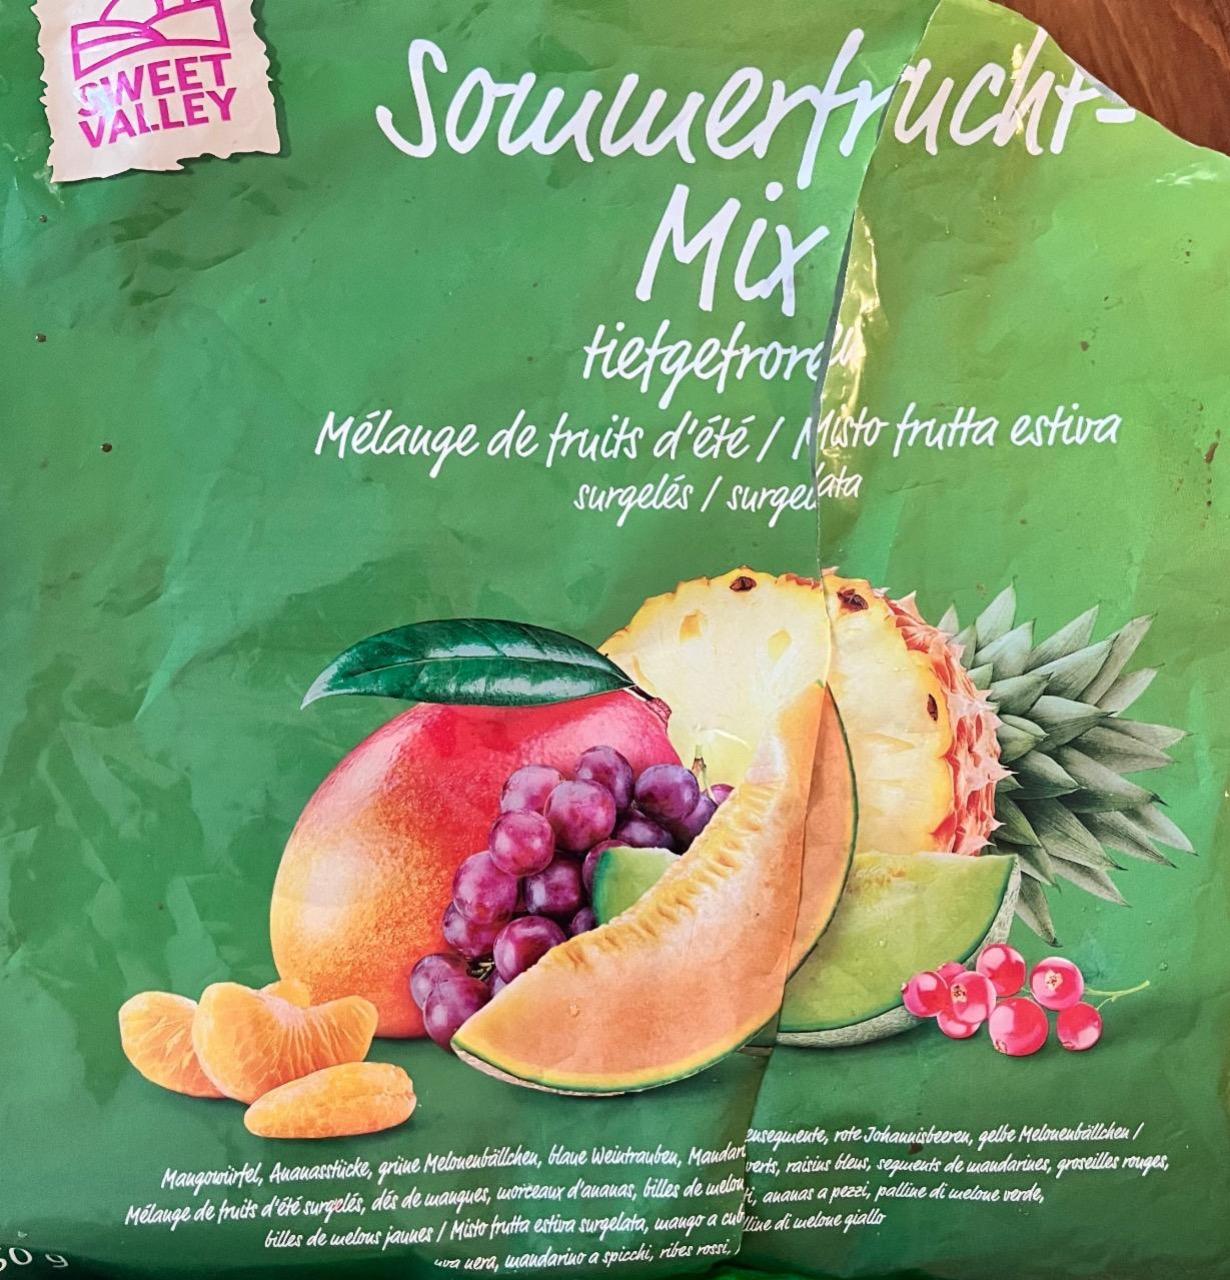 Képek - Sommerfrucht-Mix Sweet valley